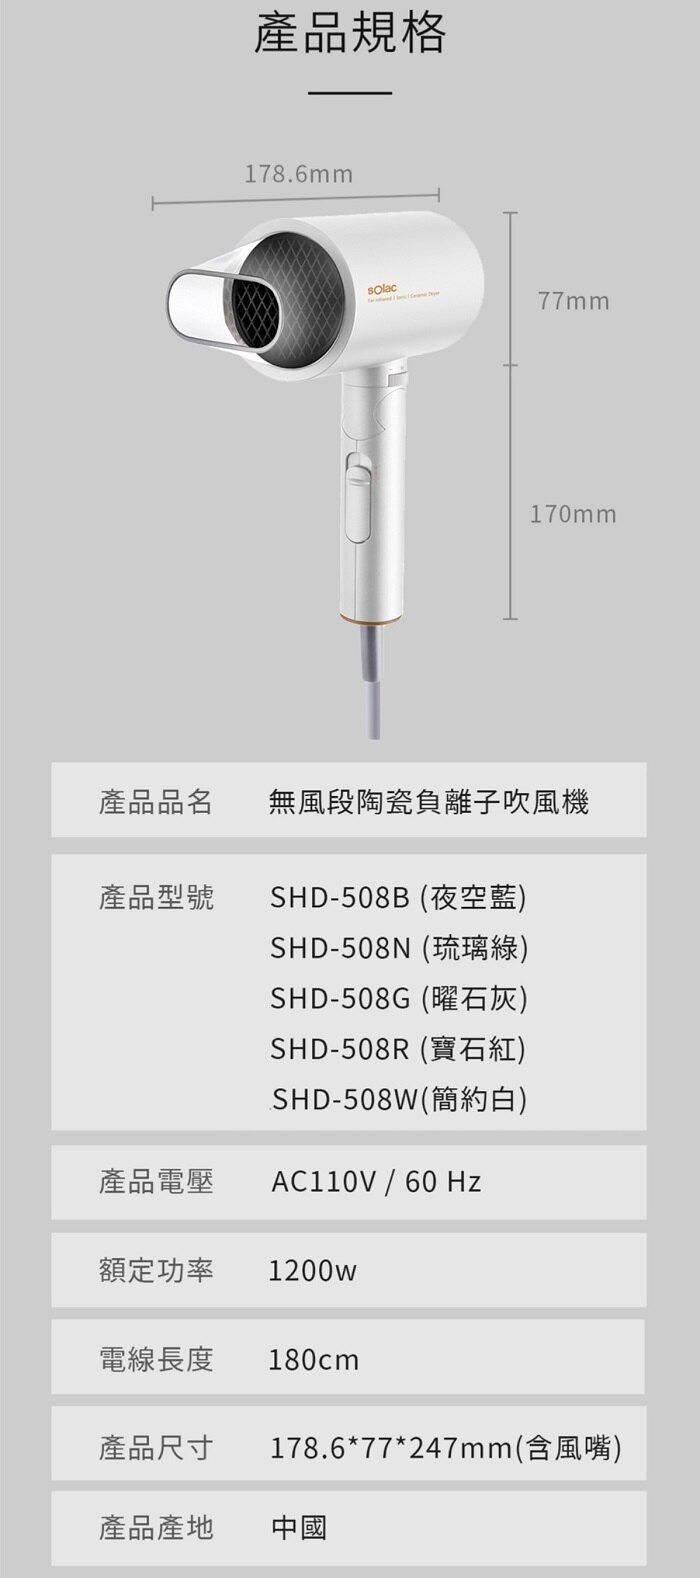 Solac 負離子生物陶瓷吹風機 SHD-508規格介紹。